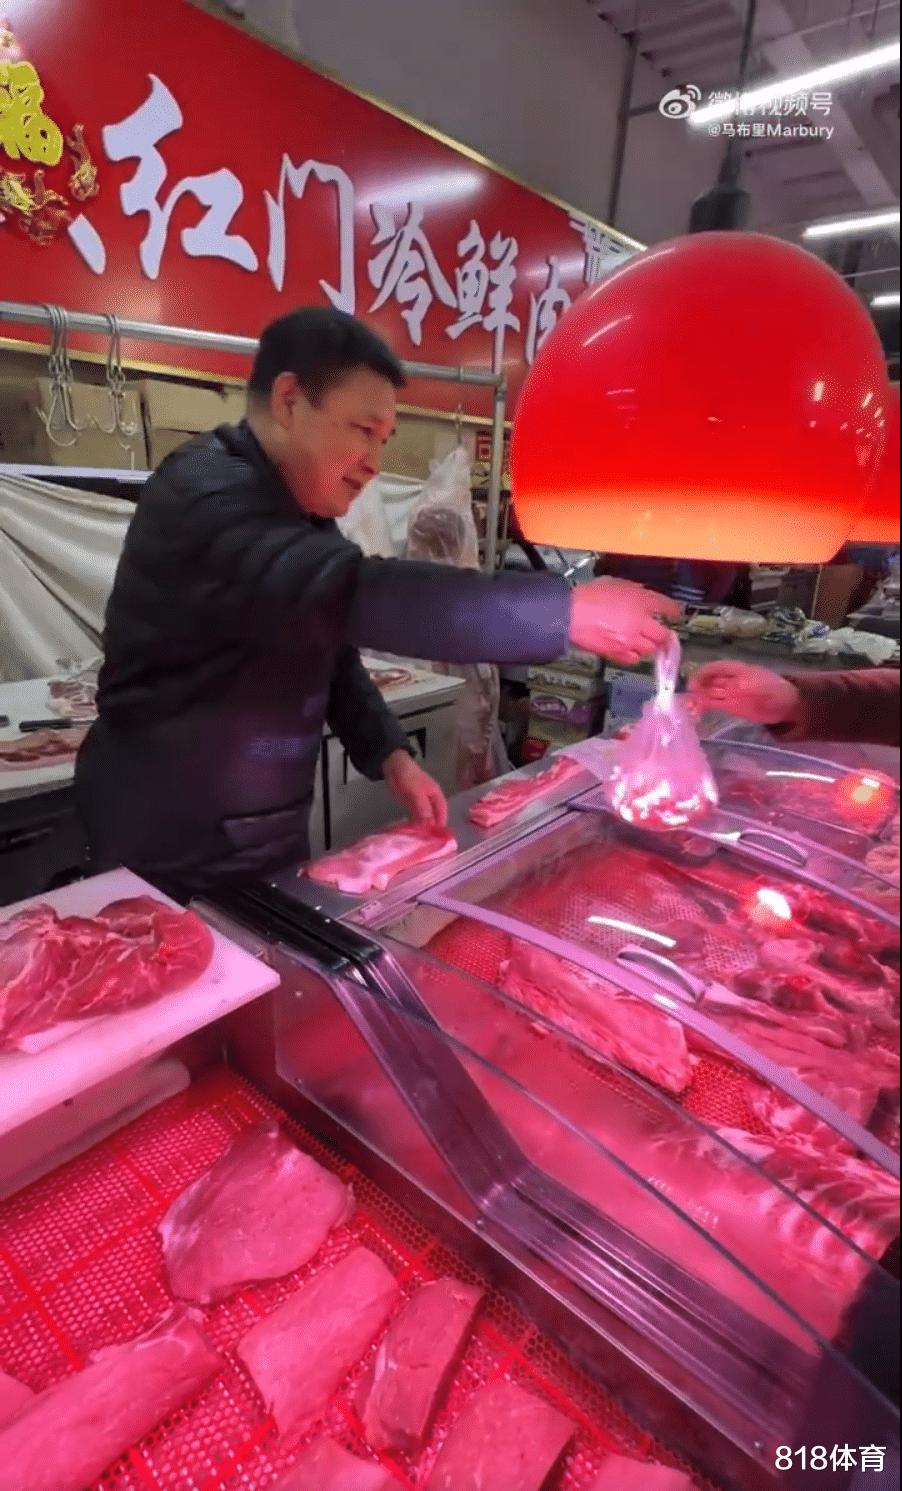 笑喷! 马布里北京菜市场买菜, 1块猪肉24块3砍价被老板拒绝: 便宜不了(3)